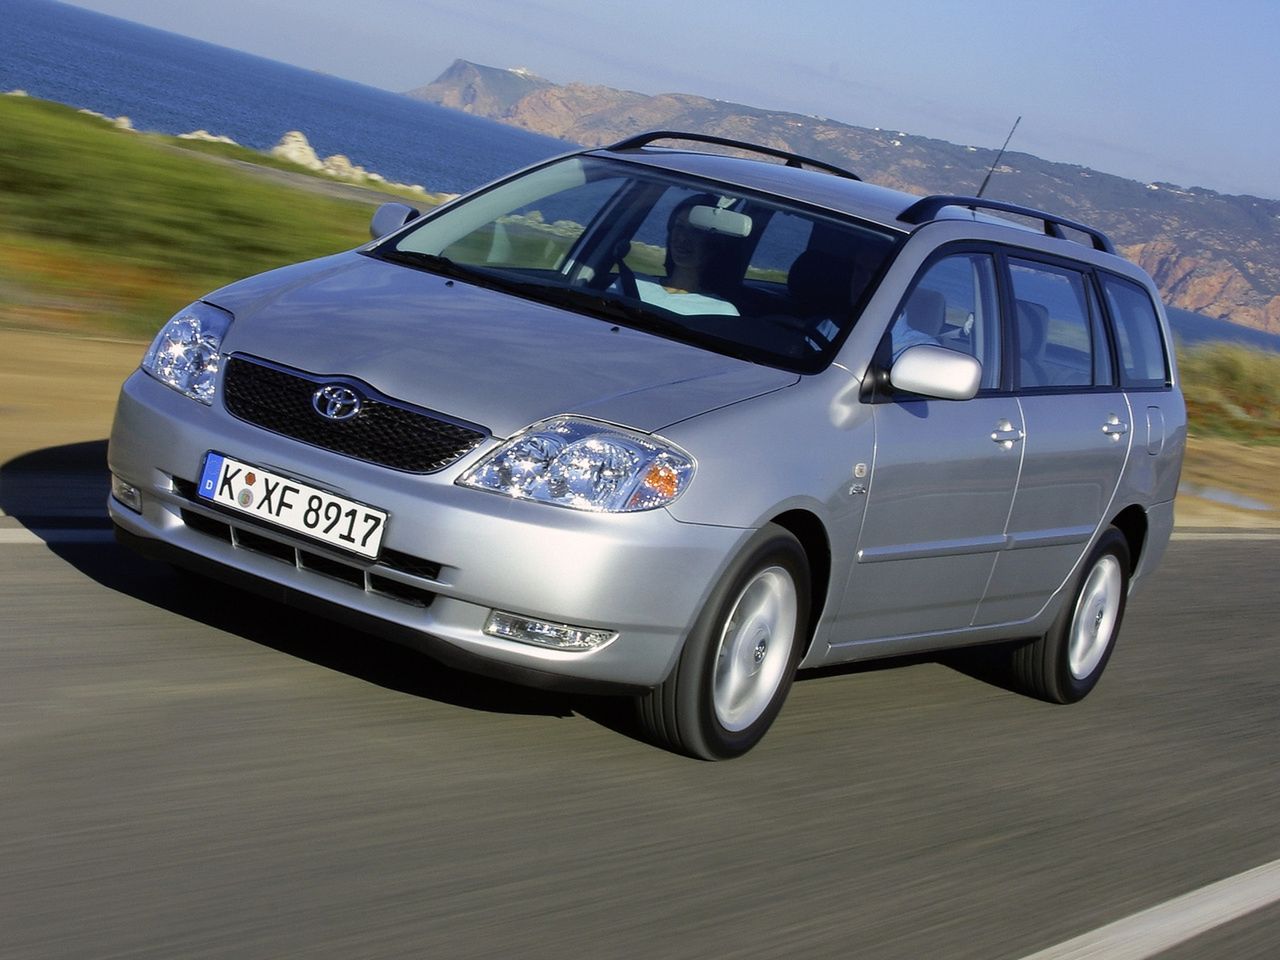 Toyota Corolla z nadwoziem kombi plus oszczędny diesel 1.4 D-4D to bardzo dobry wybór.